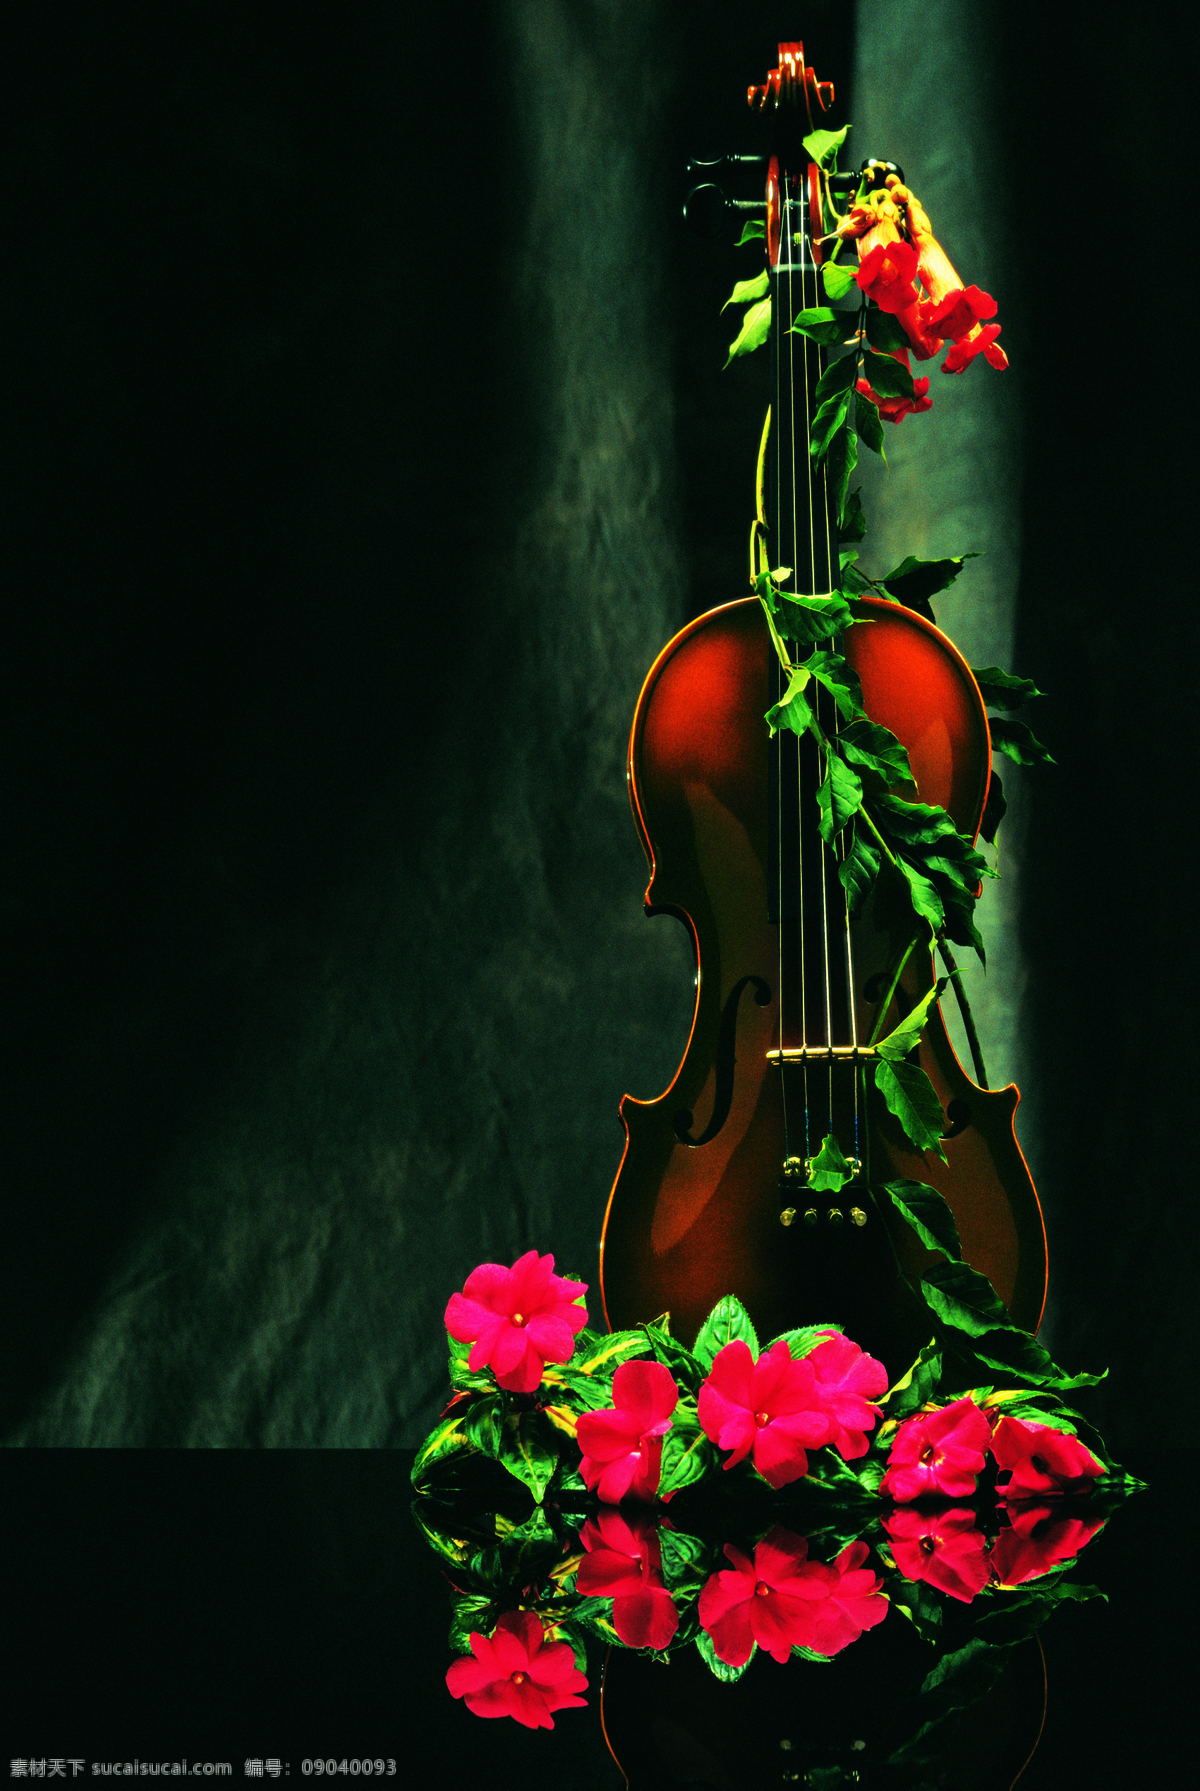 音乐简约风 音乐现代风 装饰挂画 无框画 装饰画 玫瑰花 小提琴